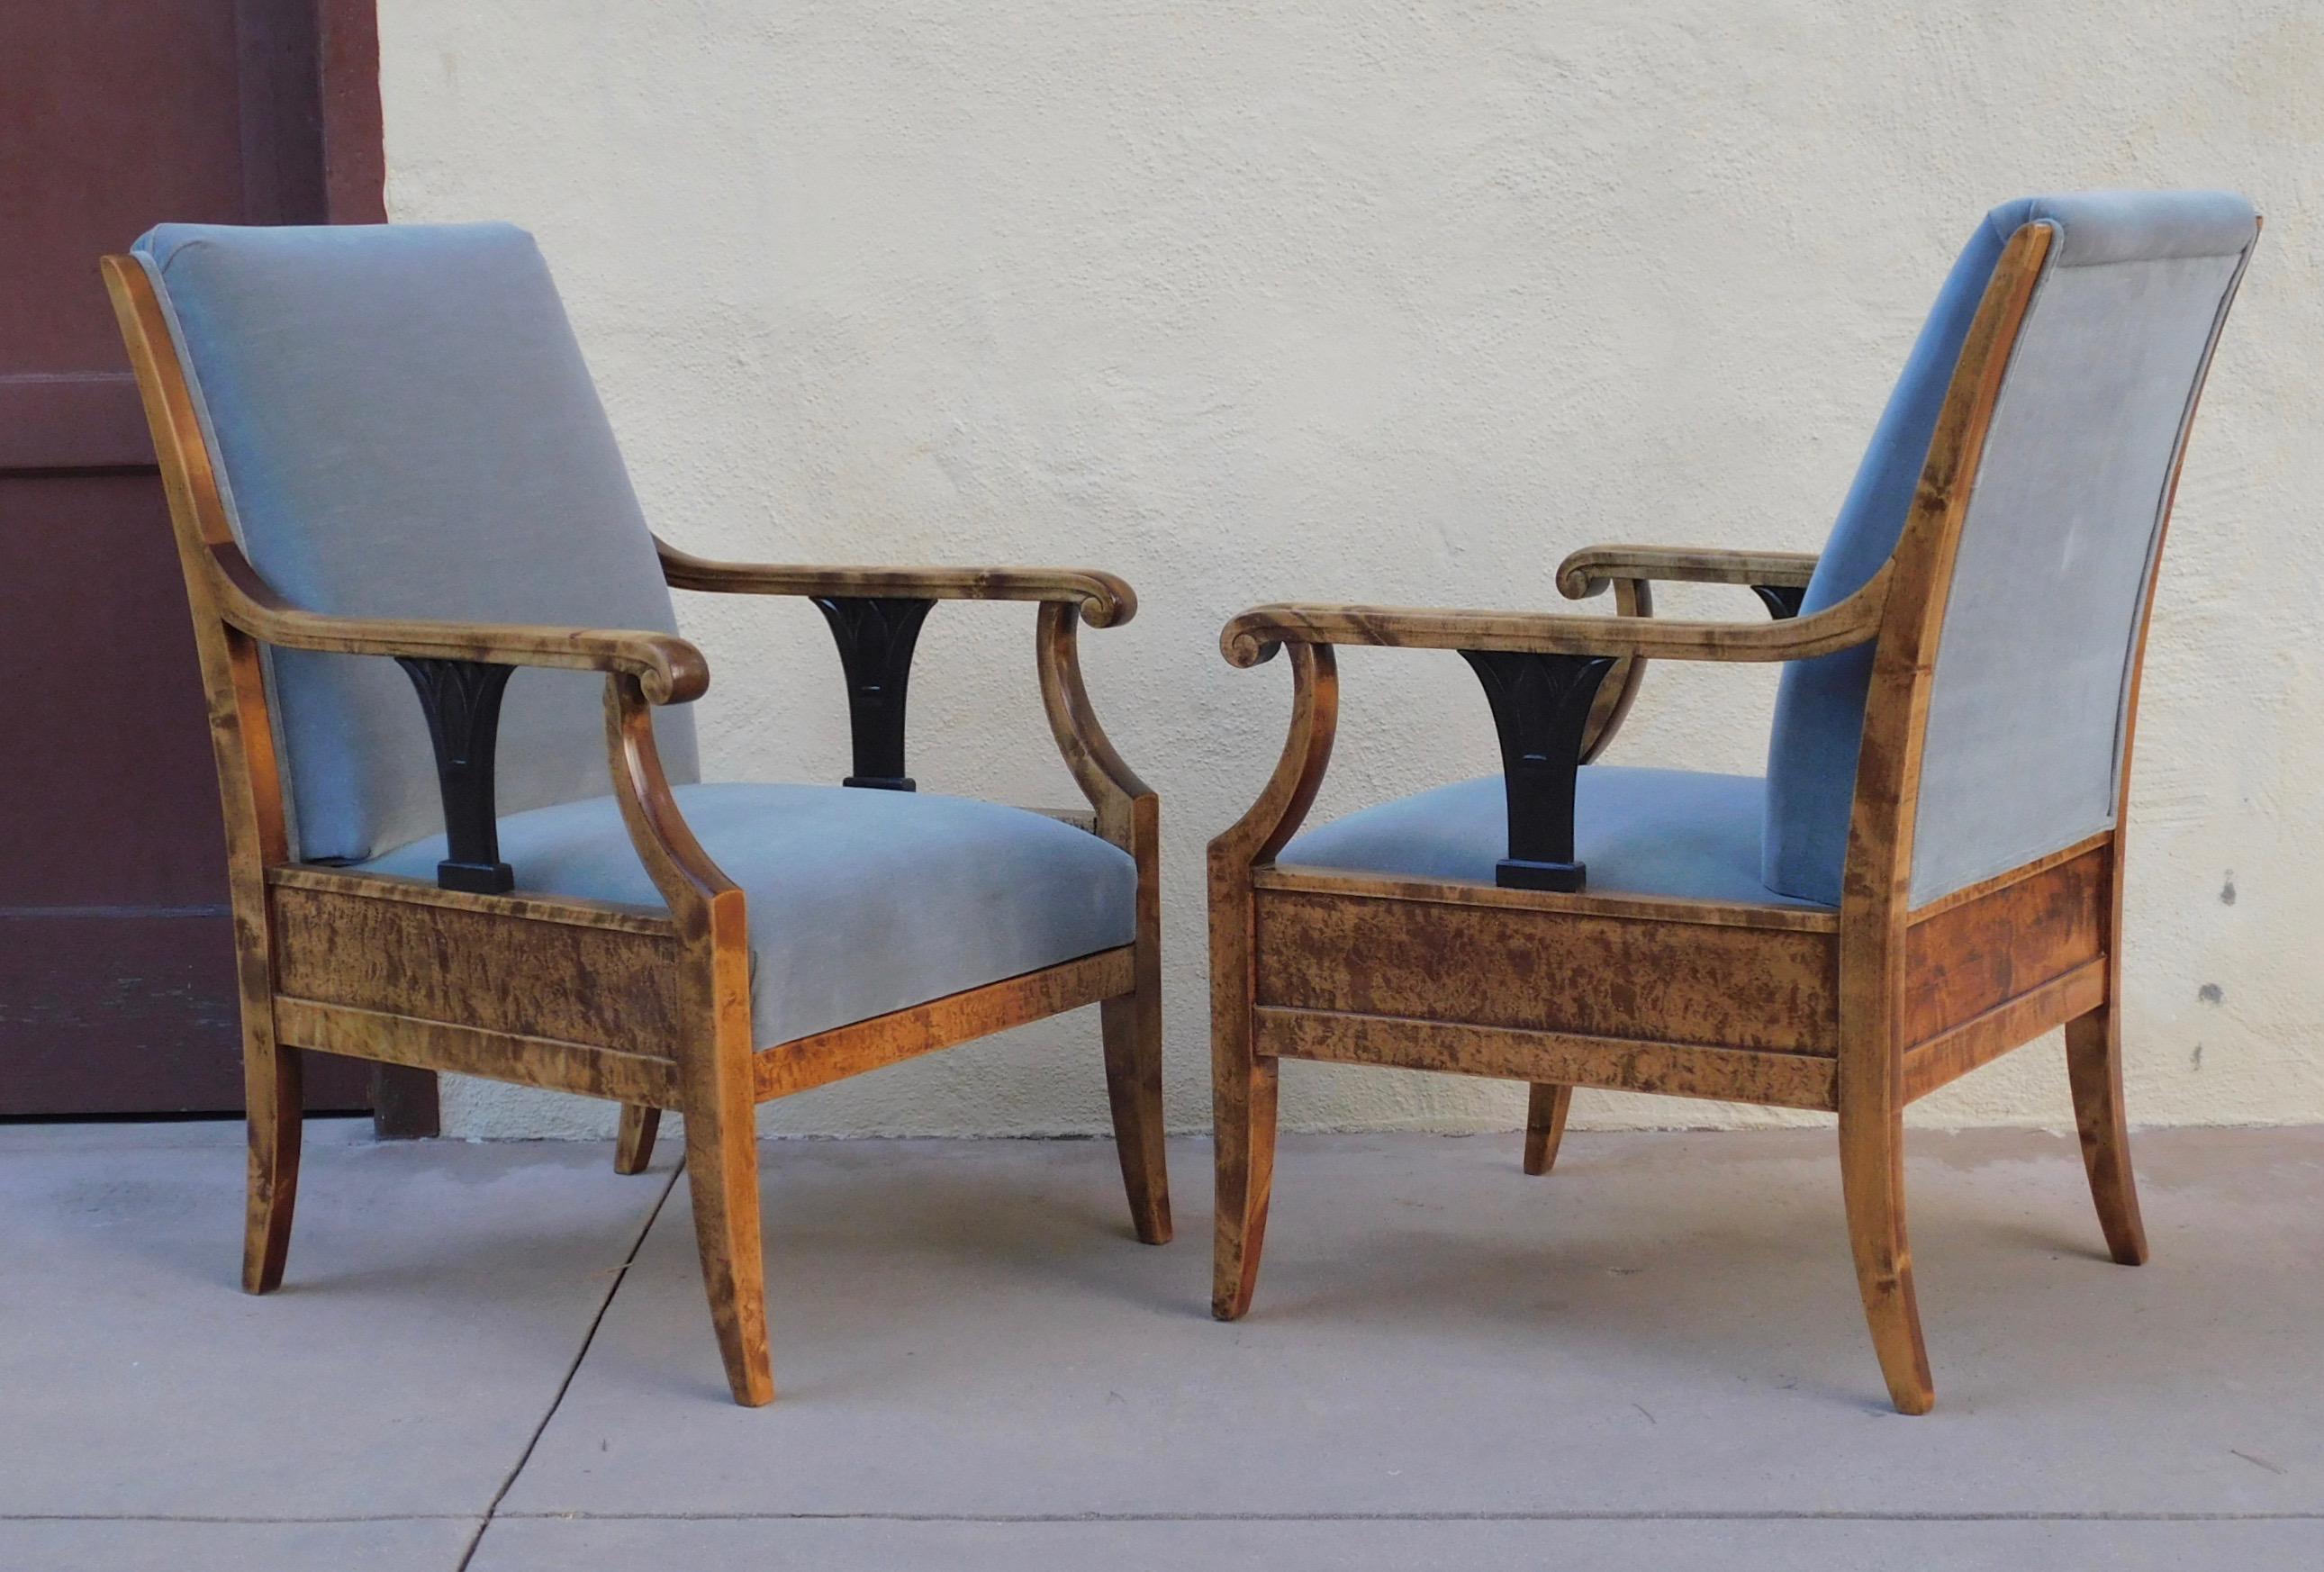 Ein Paar gepolsterte Sessel aus dem schwedischen Biedermeier. Aus stark gemasertem, goldfarbenem Birkenholz gefertigt. Akzentuiert mit neoklassizistischen Details aus ebonisiertem Birkenholz. Diese Stühle wurden gerade komplett restauriert und neu